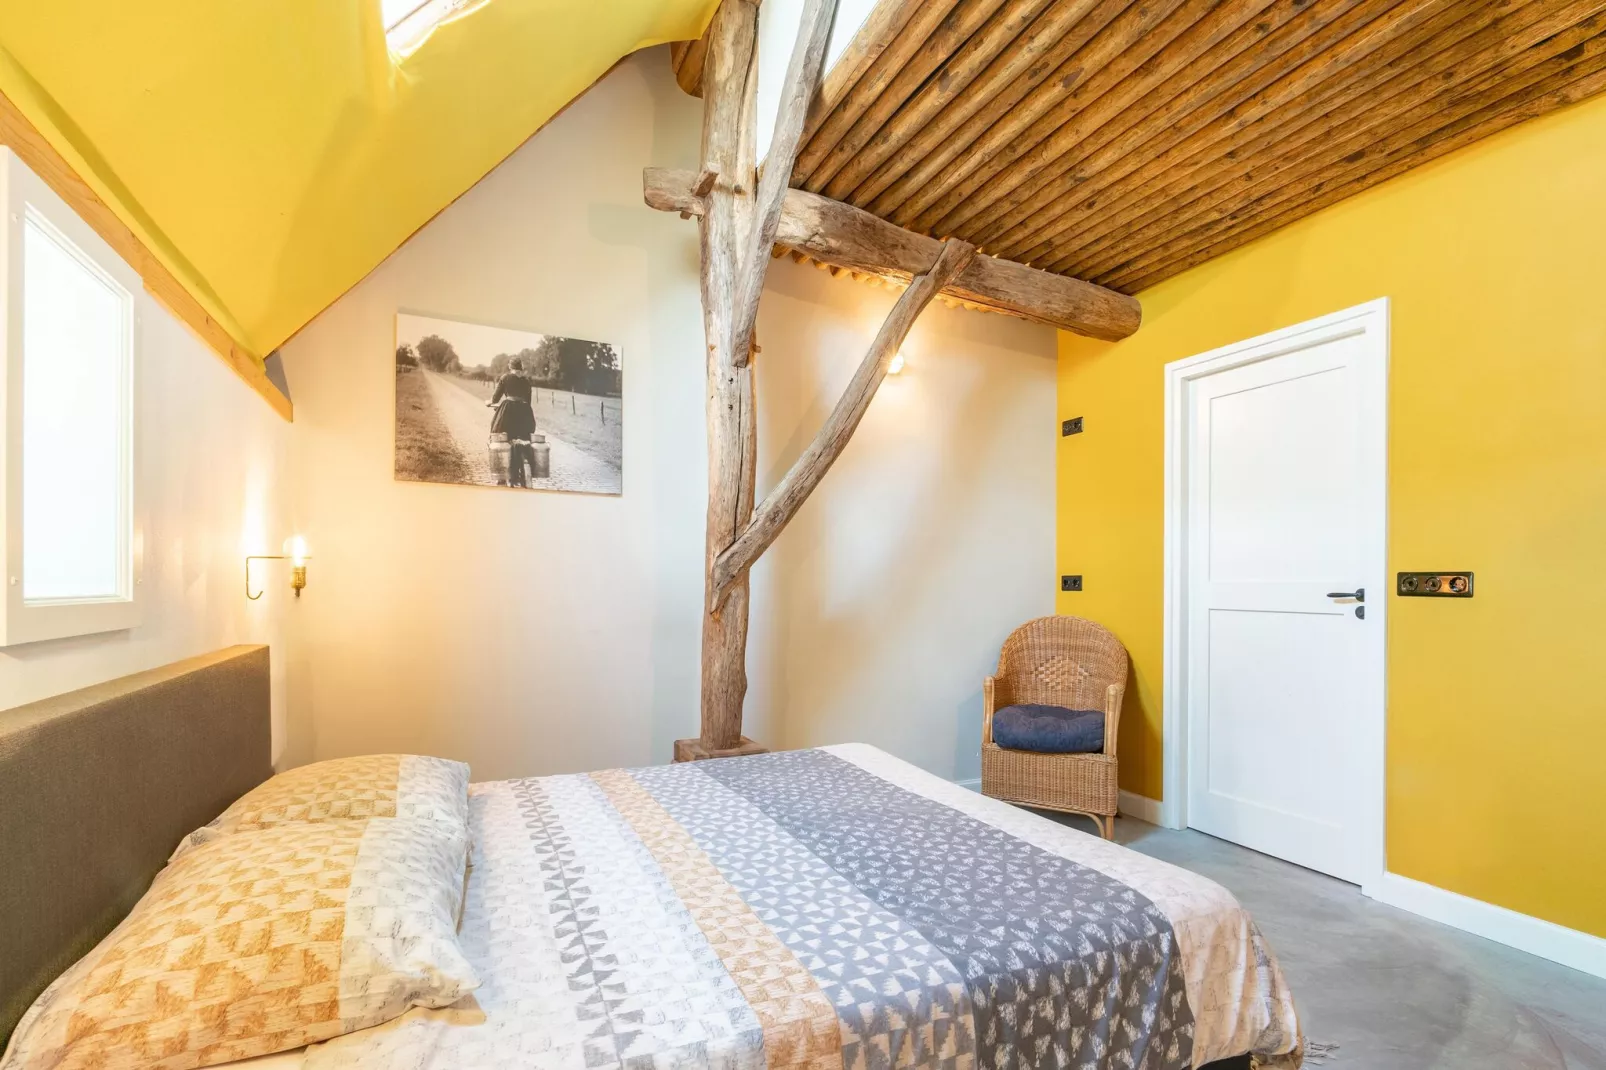 Woonboerderij in Staphorst voor 6 personen-Slaapkamer